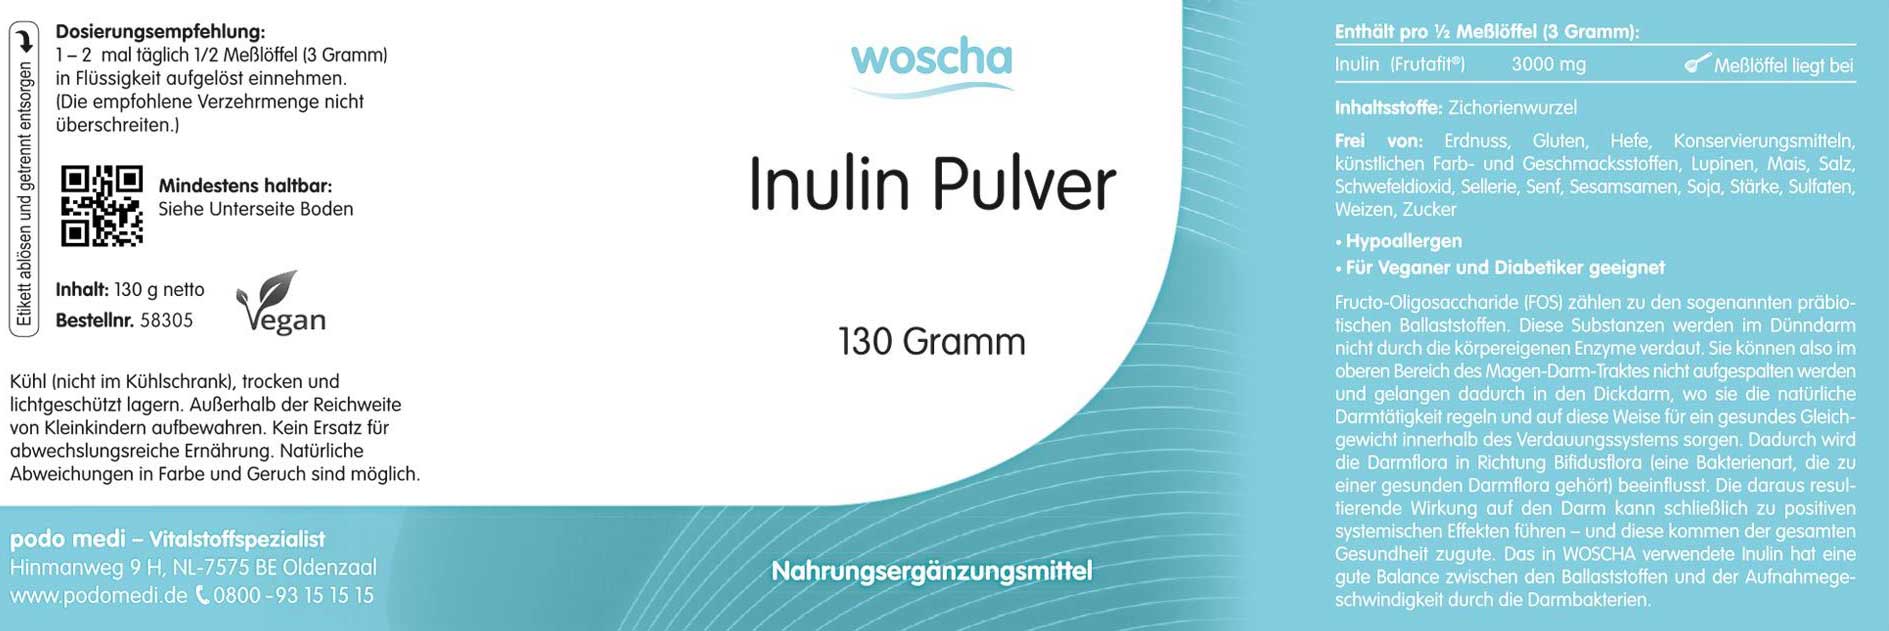 Woscha Inulin Pulver von podo medi beinhaltet 130 Gramm Etikett